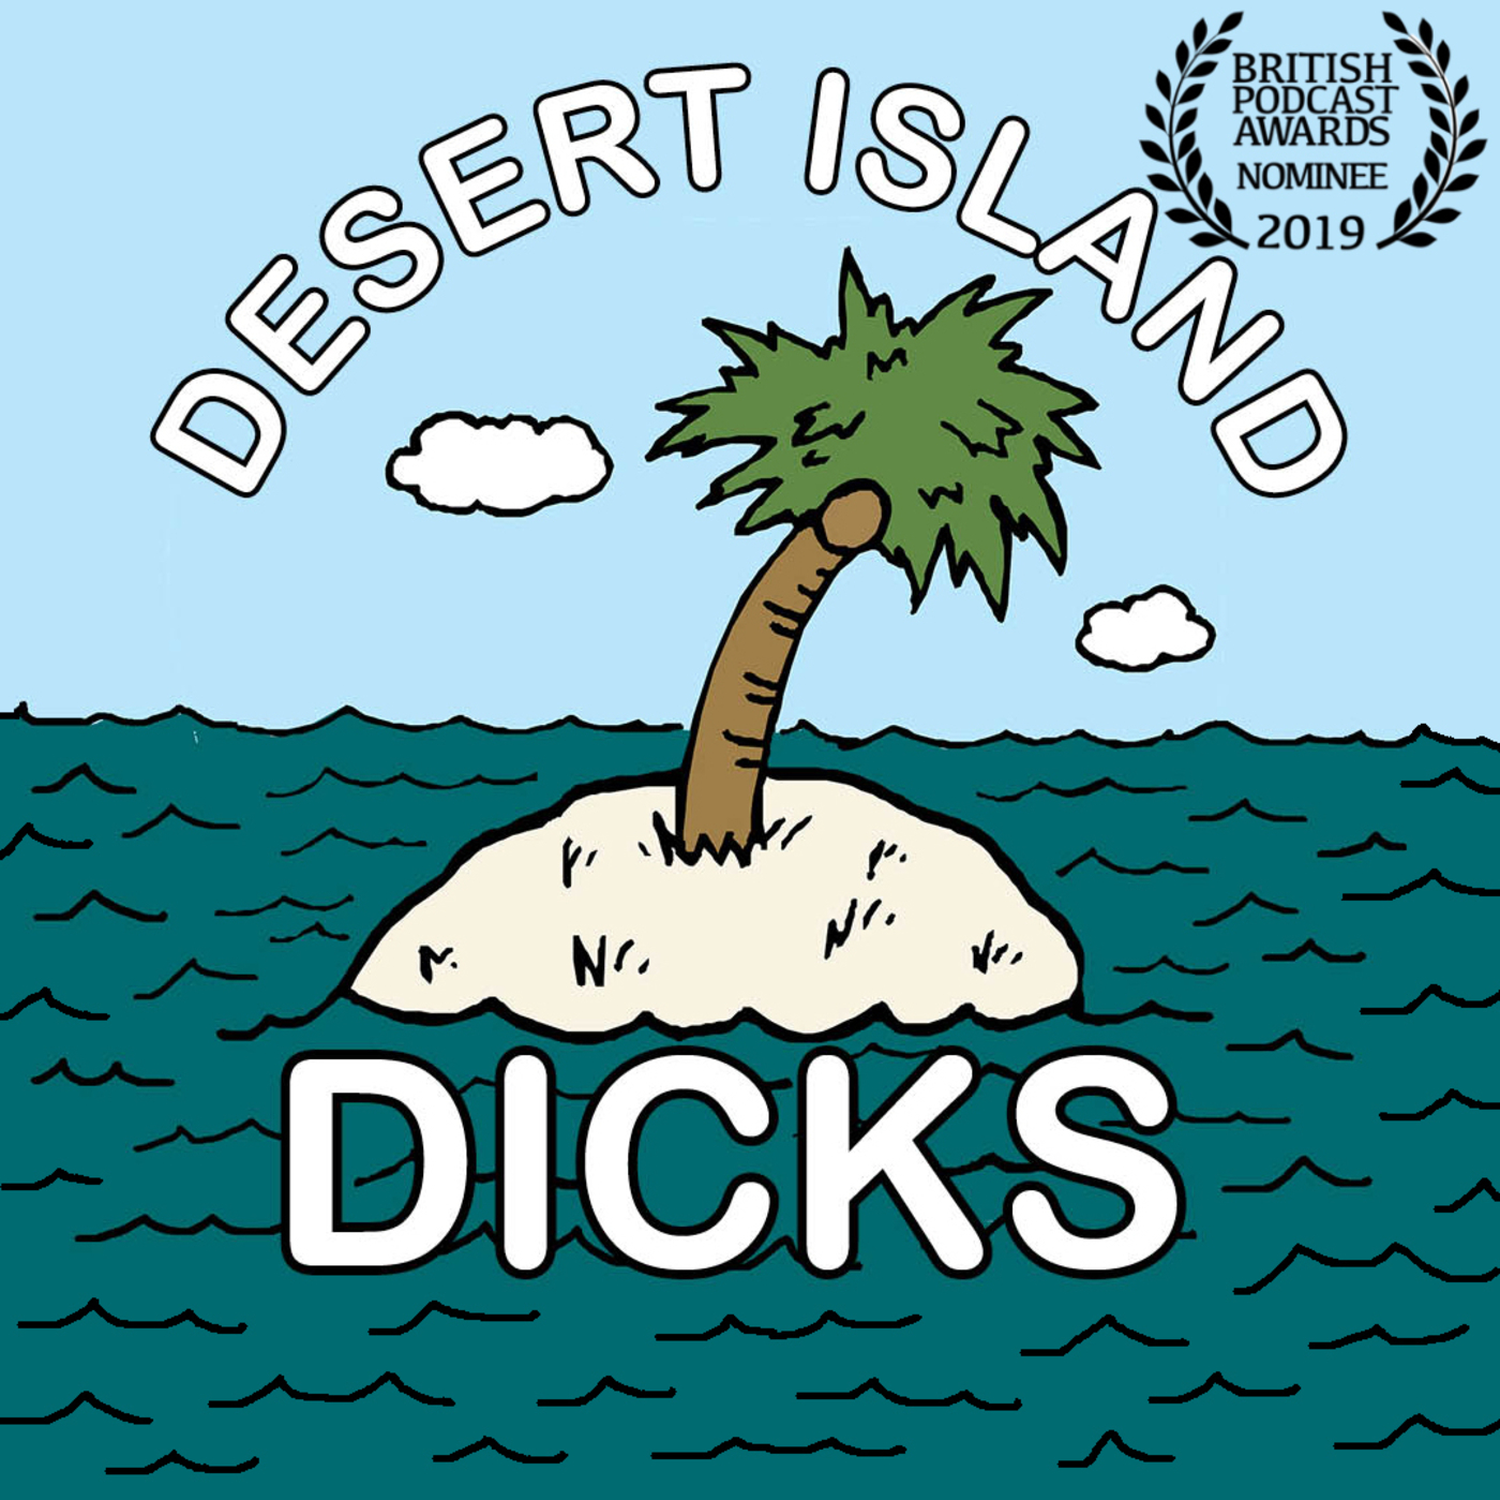 Desert Island Dicks